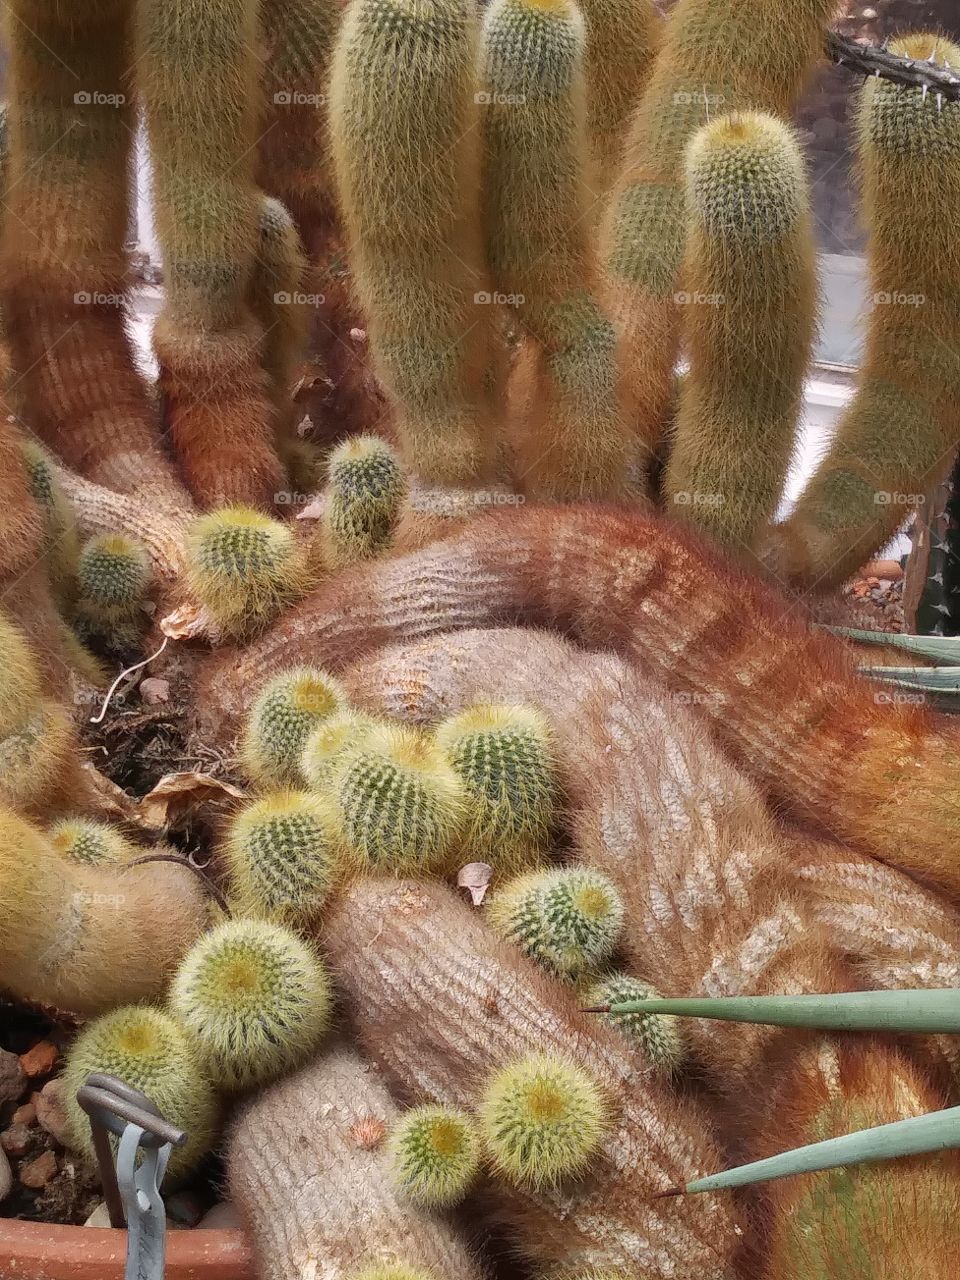 spine cactus